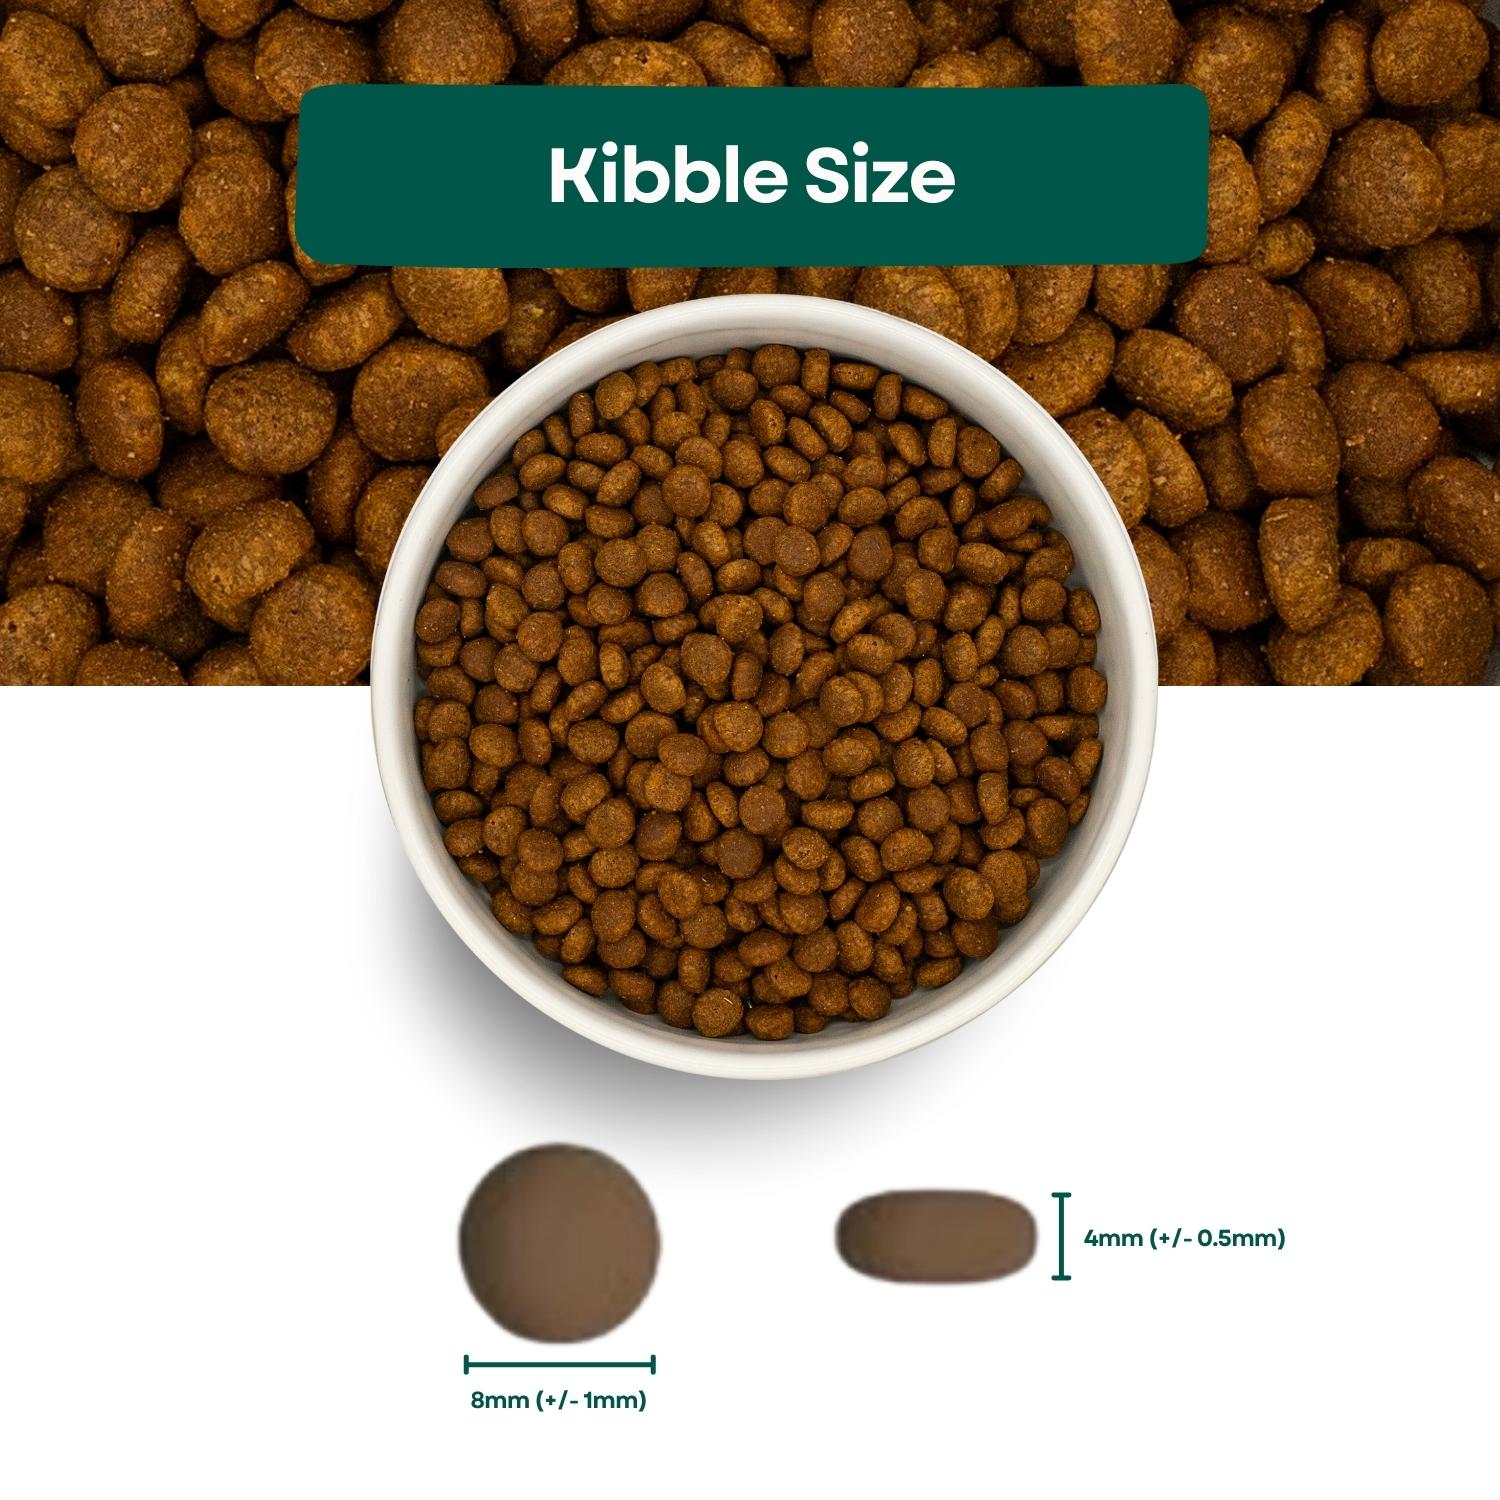 Kibble Size Connoisseur Grain Free Kitten Food - Turkey & Chicken